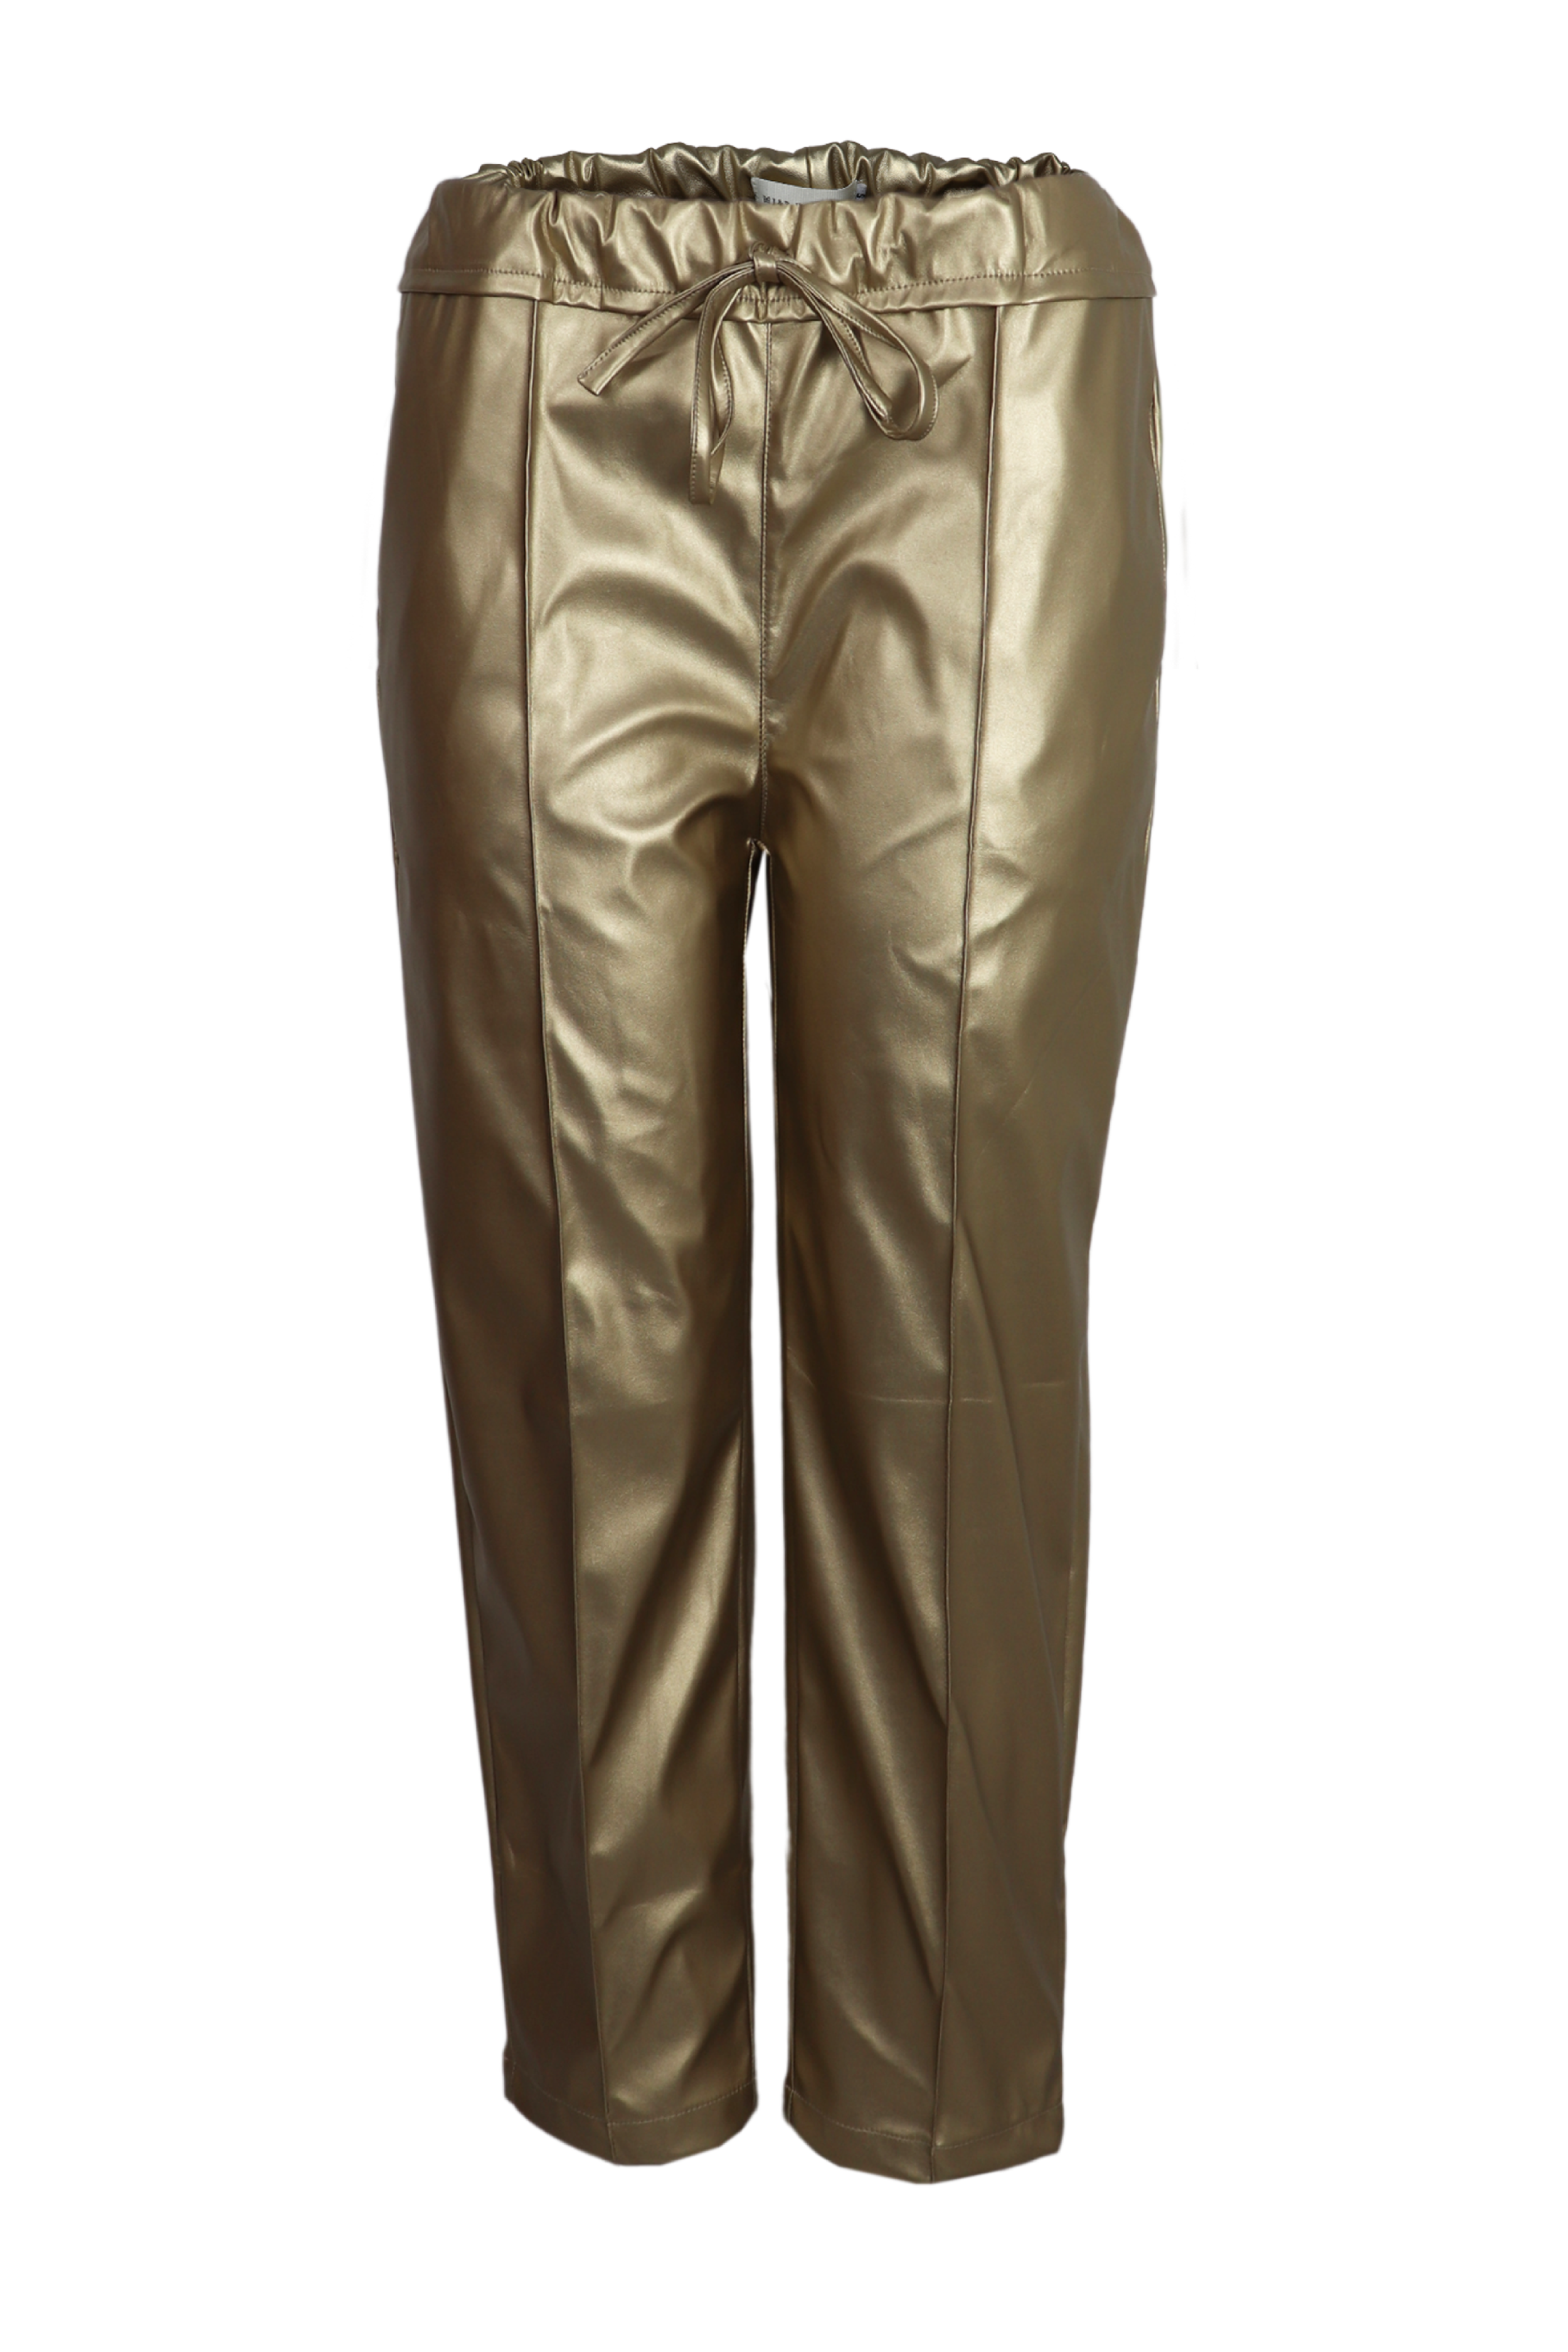 Hermoso pantalón metalizado con resorte en la cintura de color dorado